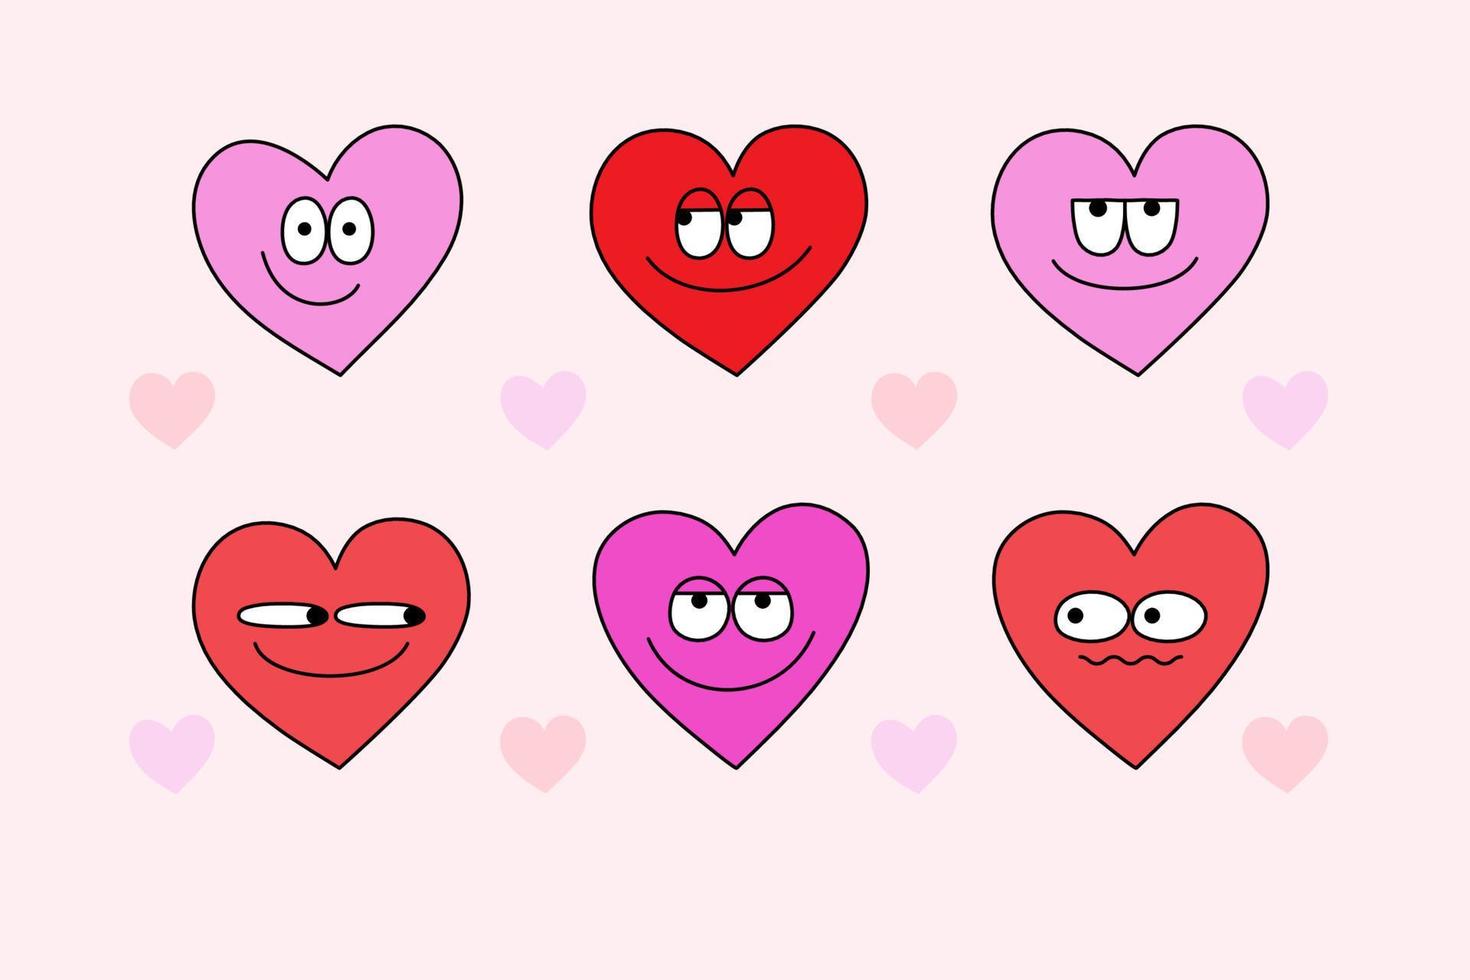 Jeu de personnages de dessin animé coeur groovy des années 70. autocollants coeur funky dessinés à la main dans un style rétro pour les cartes de voeux de la saint valentin. vecteur